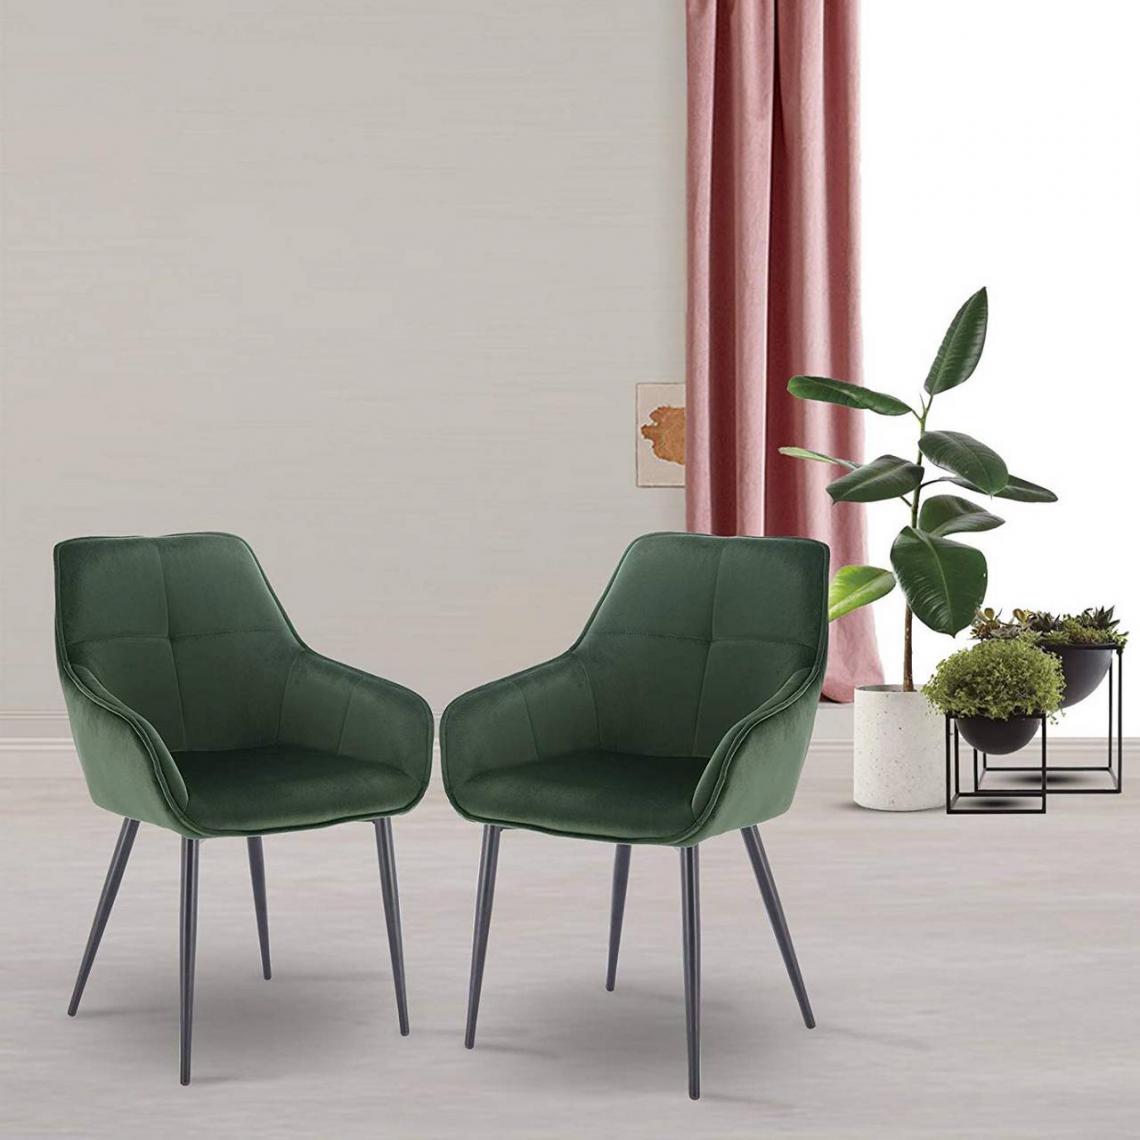 MercatoXL - Chaise de cuisine et modèle en métal velours vert foncé - Tables à manger